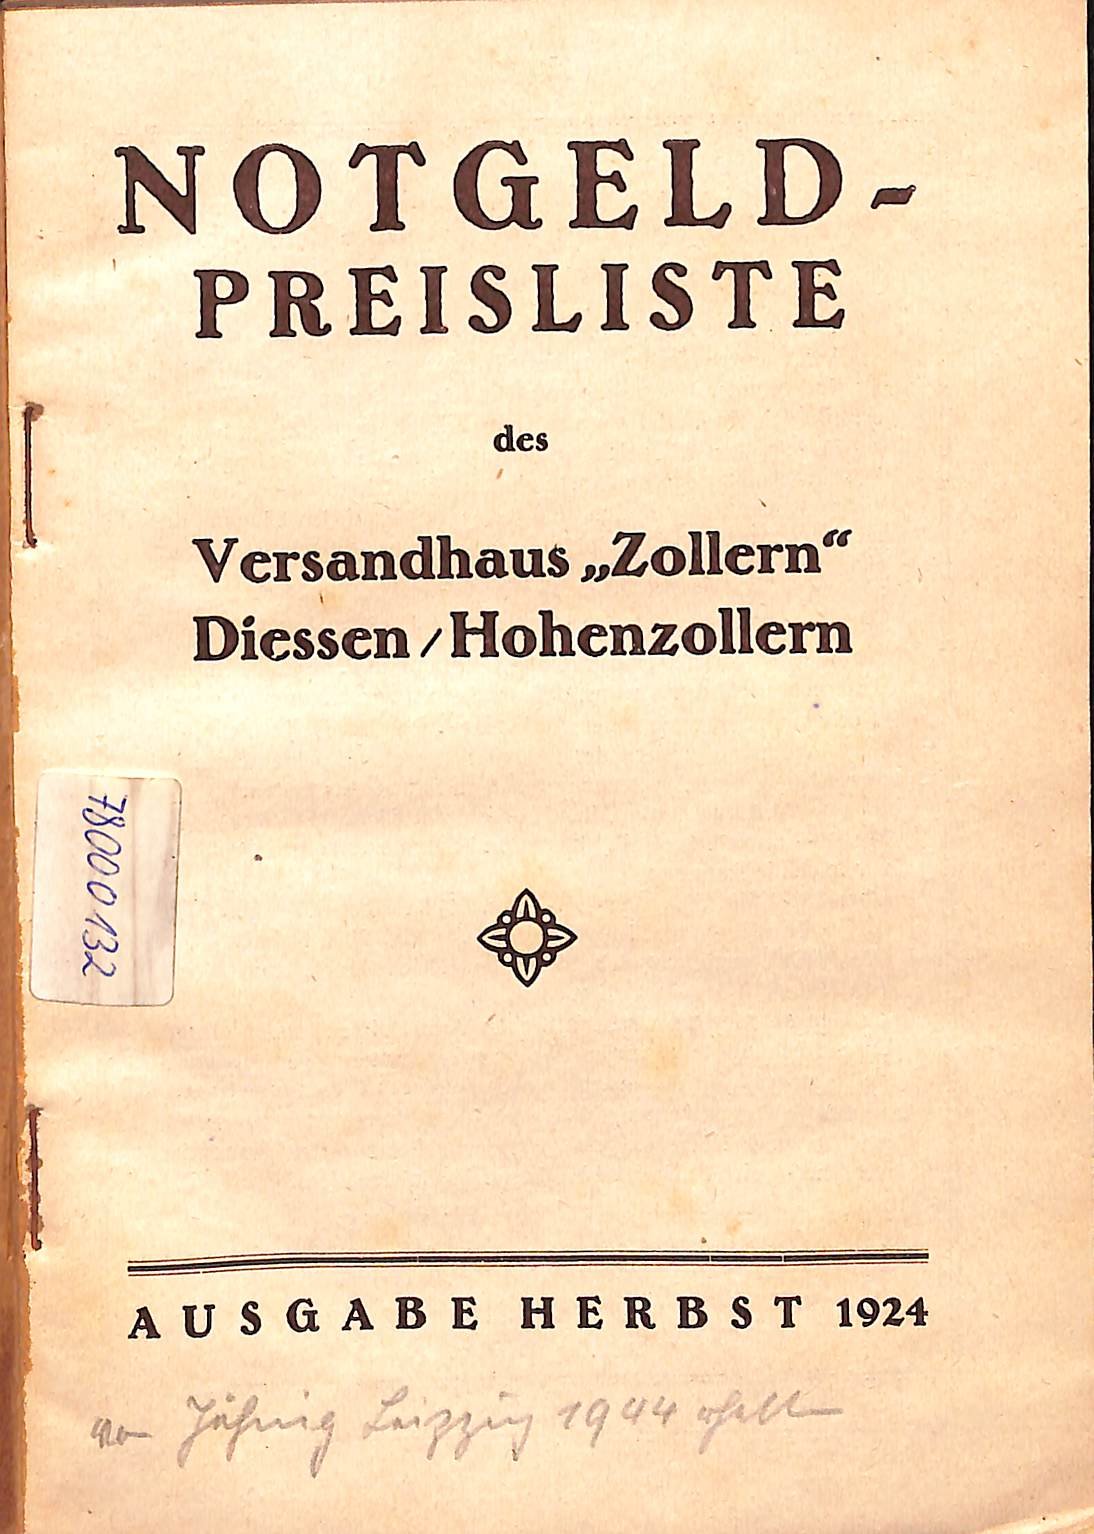 Notgeld-Preisliste des Versandhaus "Zollern", Frühjahr 1925 (HEIMATWELTEN Zwönitz - Raritätensammlung Bruno Gebhardt CC BY-NC-SA)